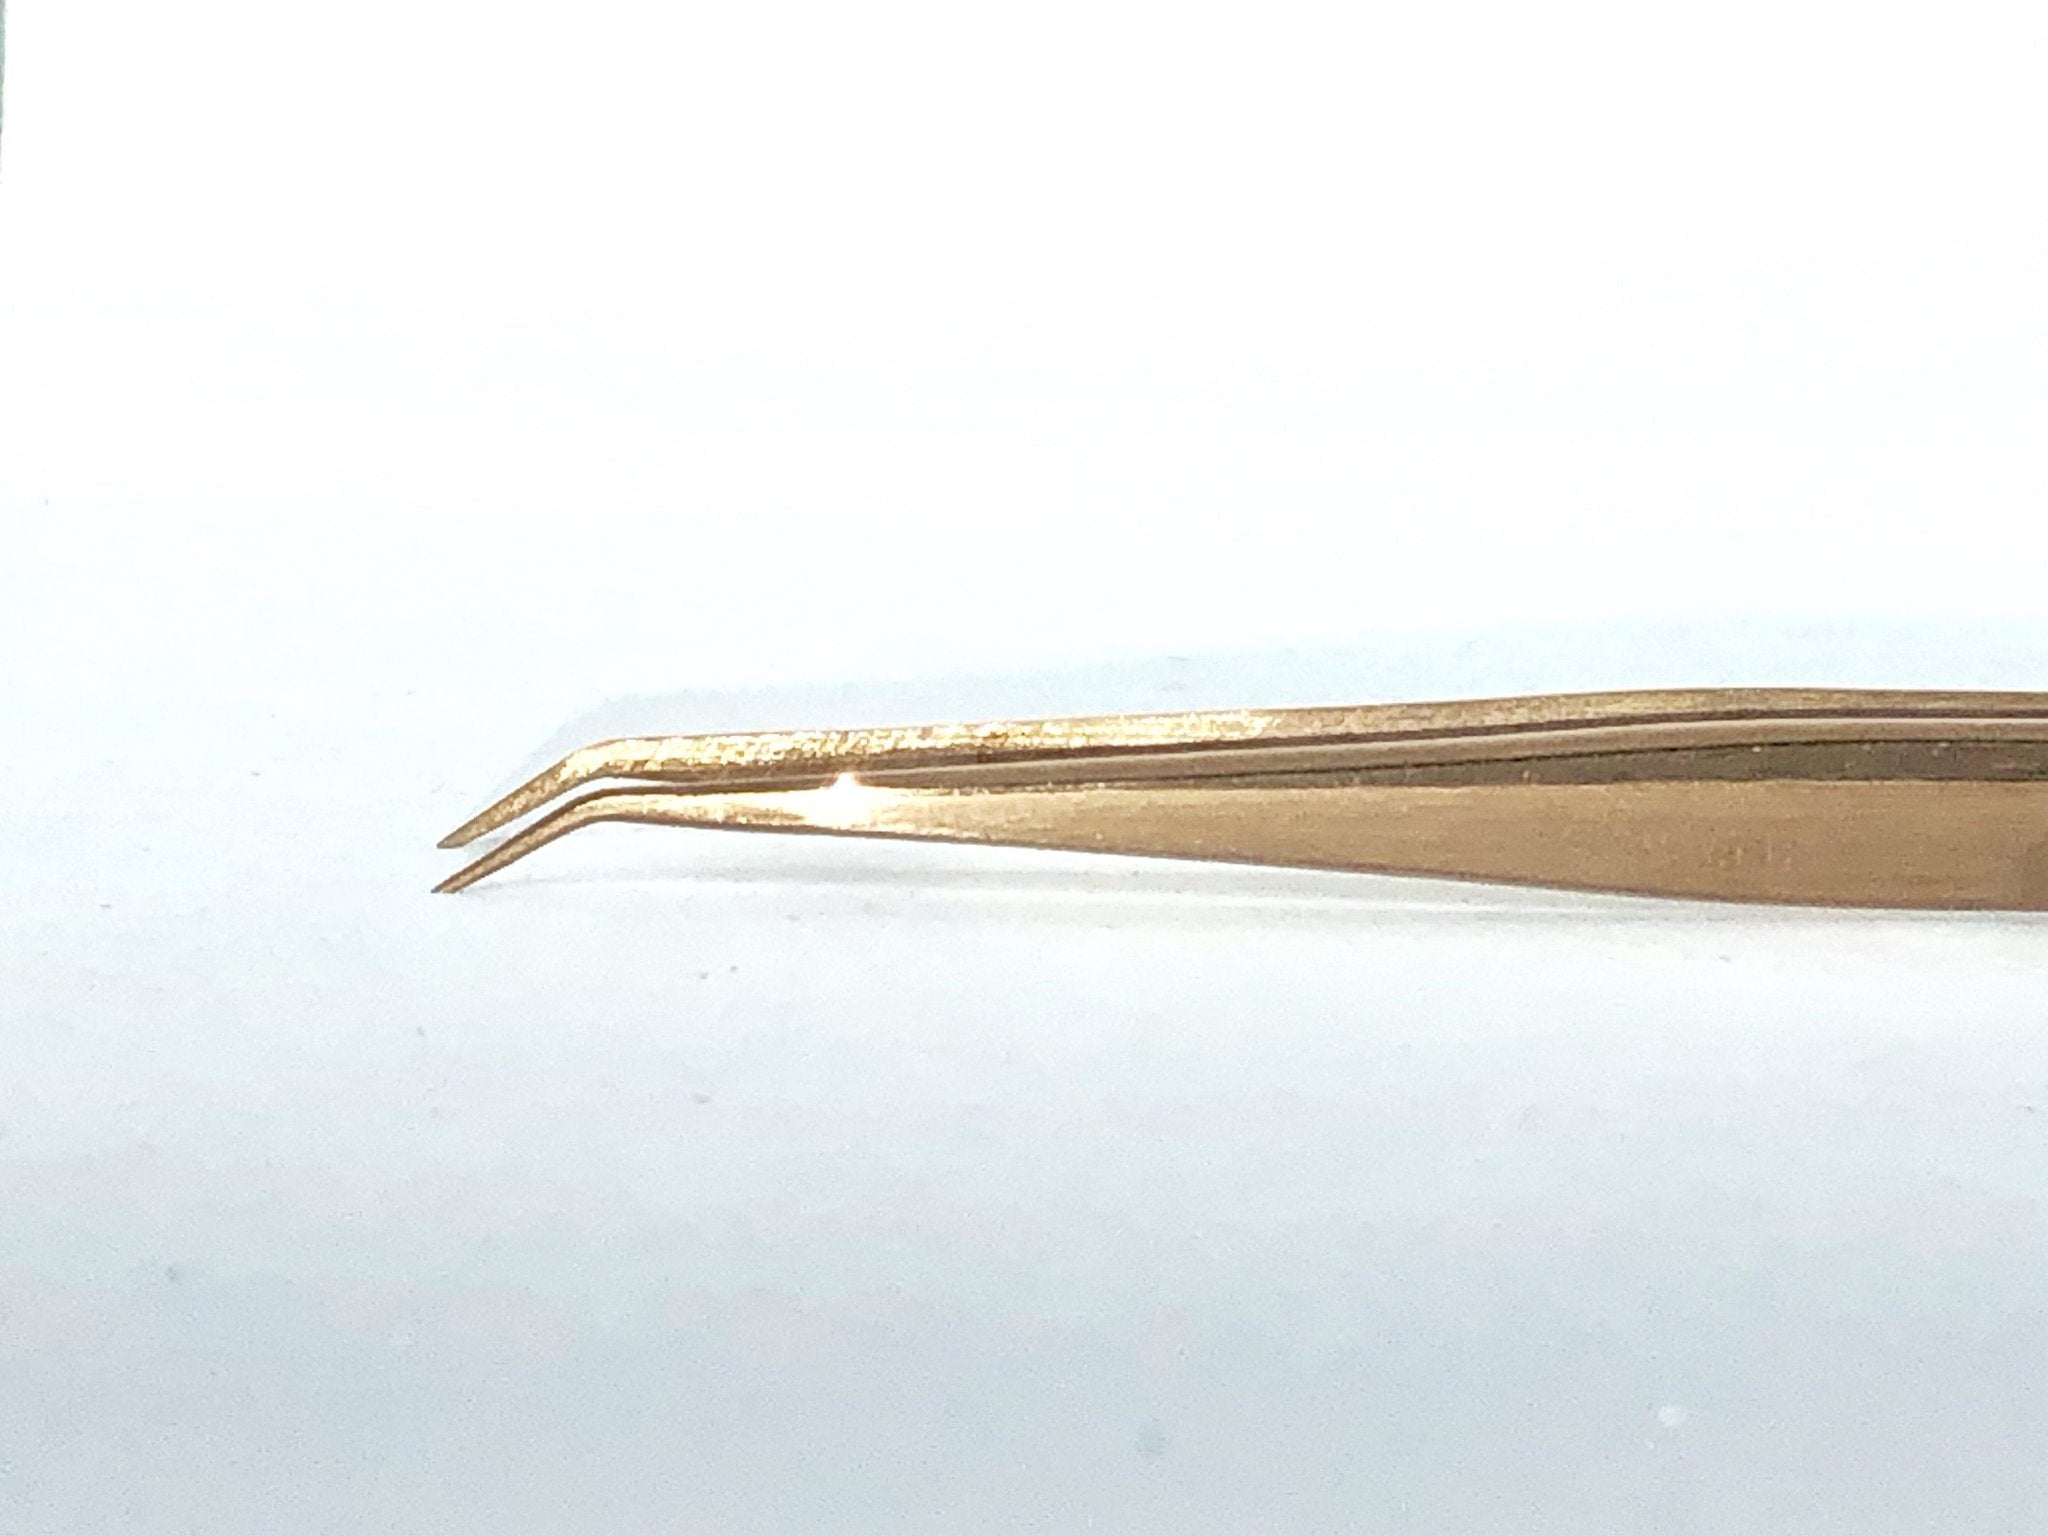 Gold Beak Lash Tweezers - Model #101